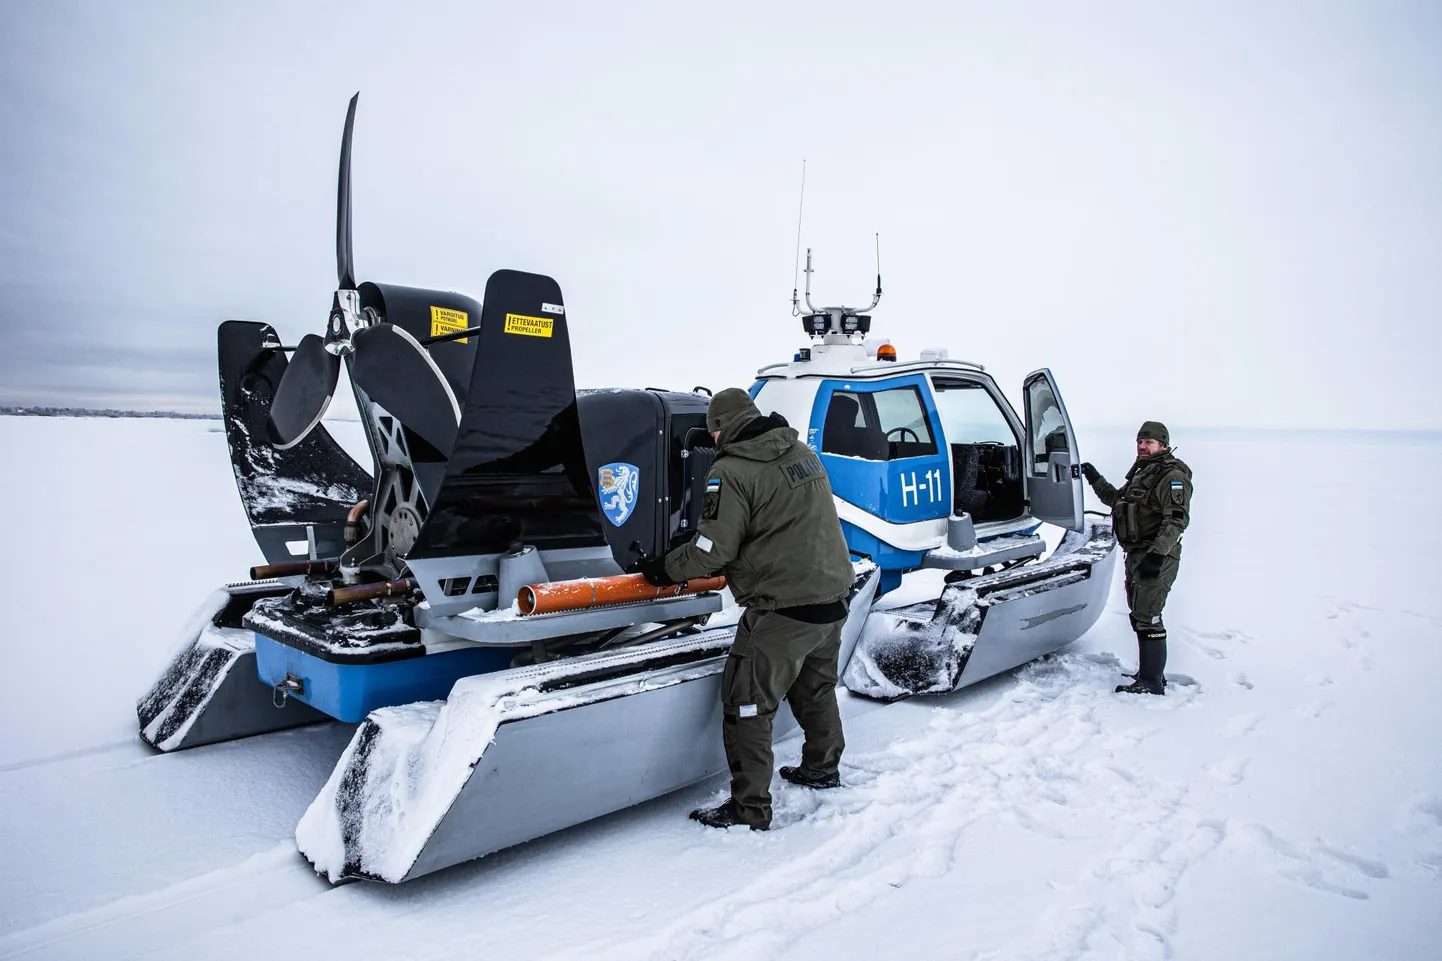 Пограничники кордона Варнья направляются на ежедневный осмотр на Чудское озеро. Антс Сийранд говорит, что самая большая головная боль для рыбаков-любителей возникает, когда лед формируется или трескается.